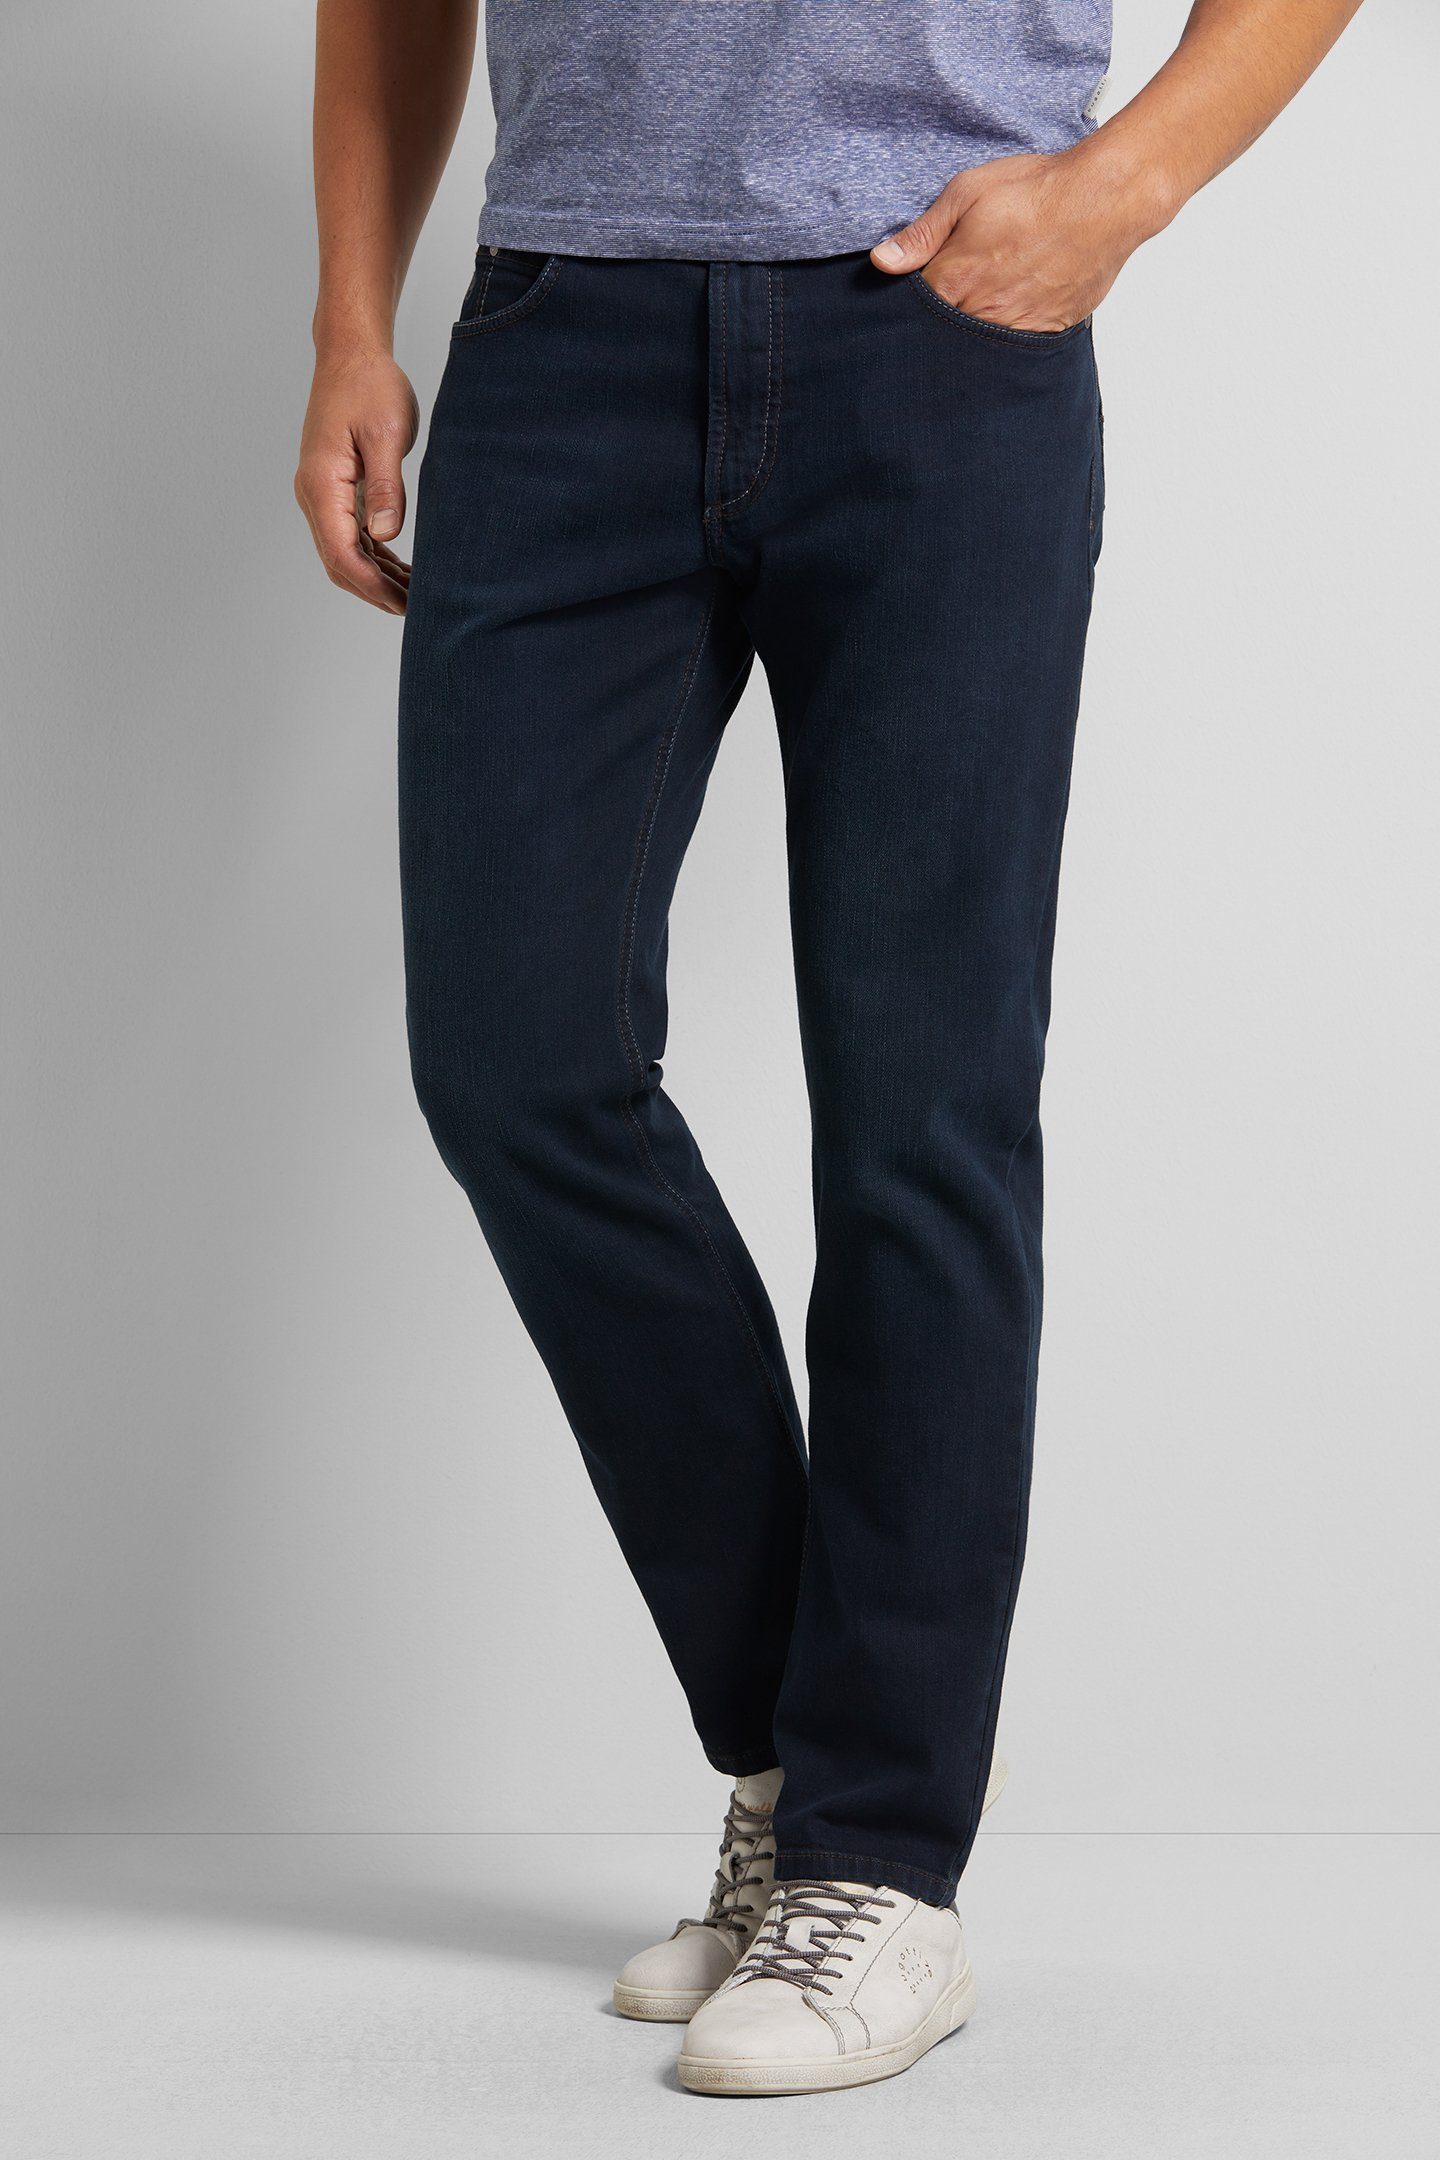 bugatti 5-Pocket-Jeans mit Comfort Stretch blau-schwarz